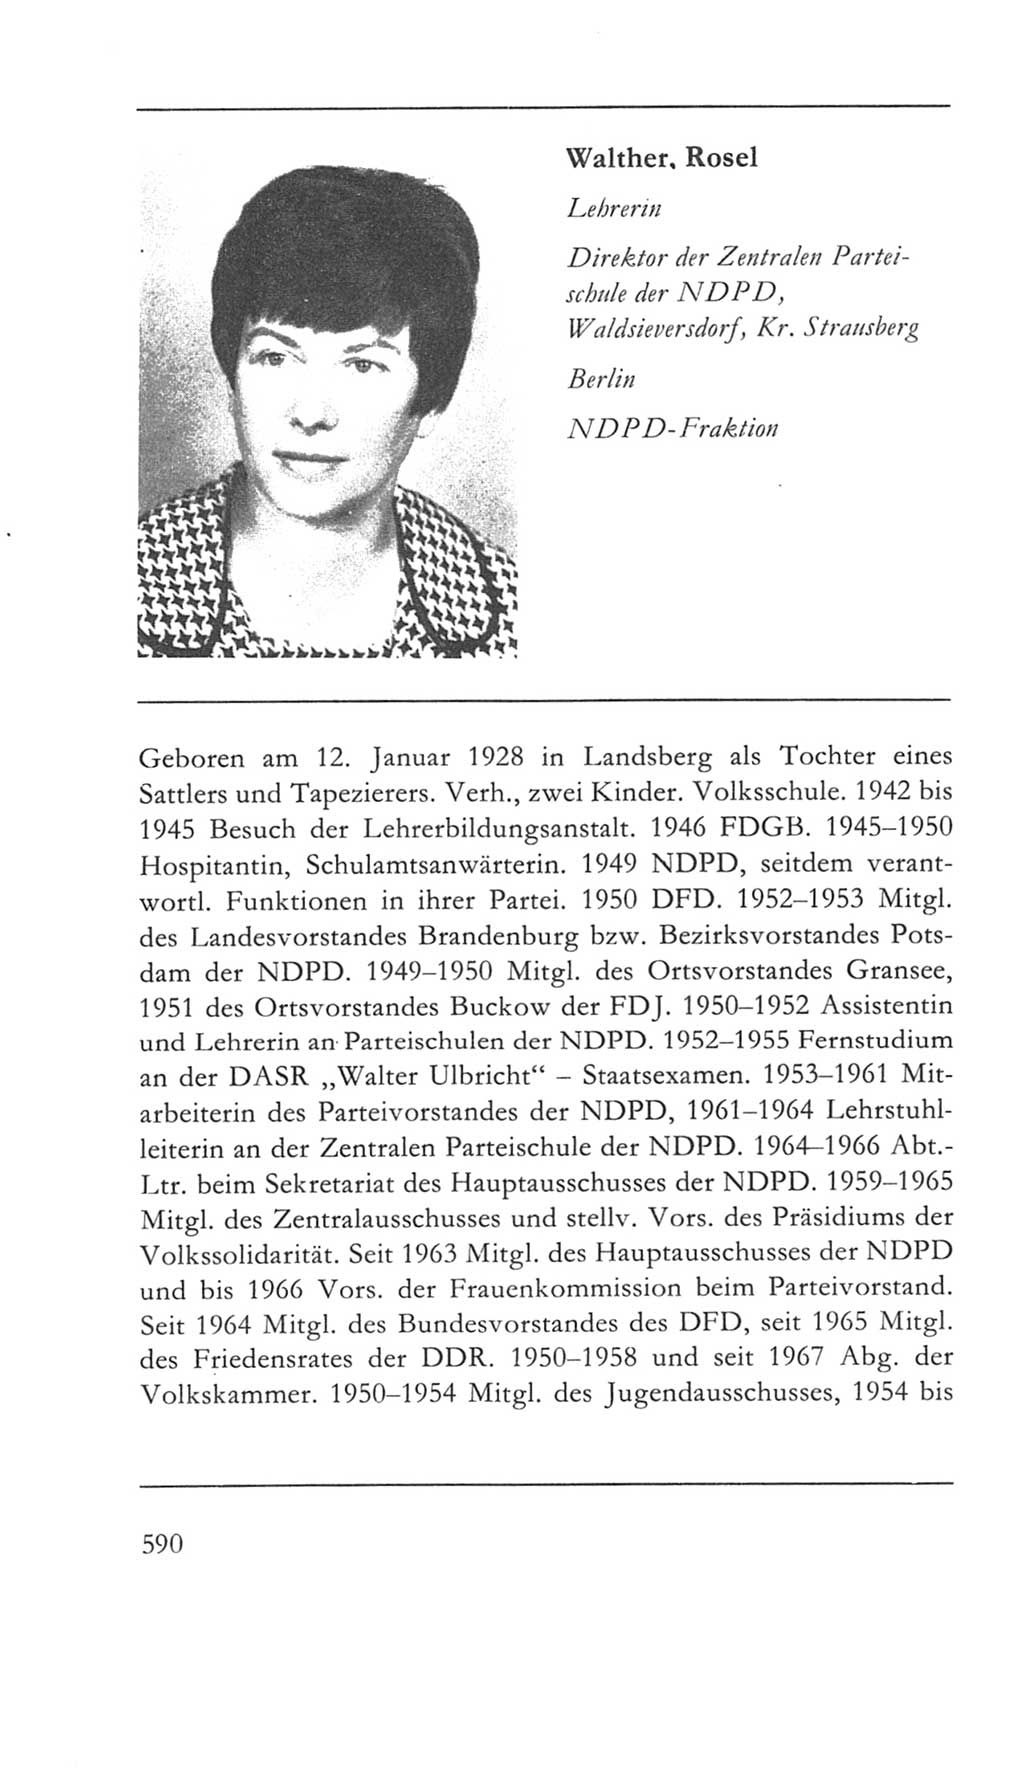 Volkskammer (VK) der Deutschen Demokratischen Republik (DDR) 5. Wahlperiode 1967-1971, Seite 590 (VK. DDR 5. WP. 1967-1971, S. 590)